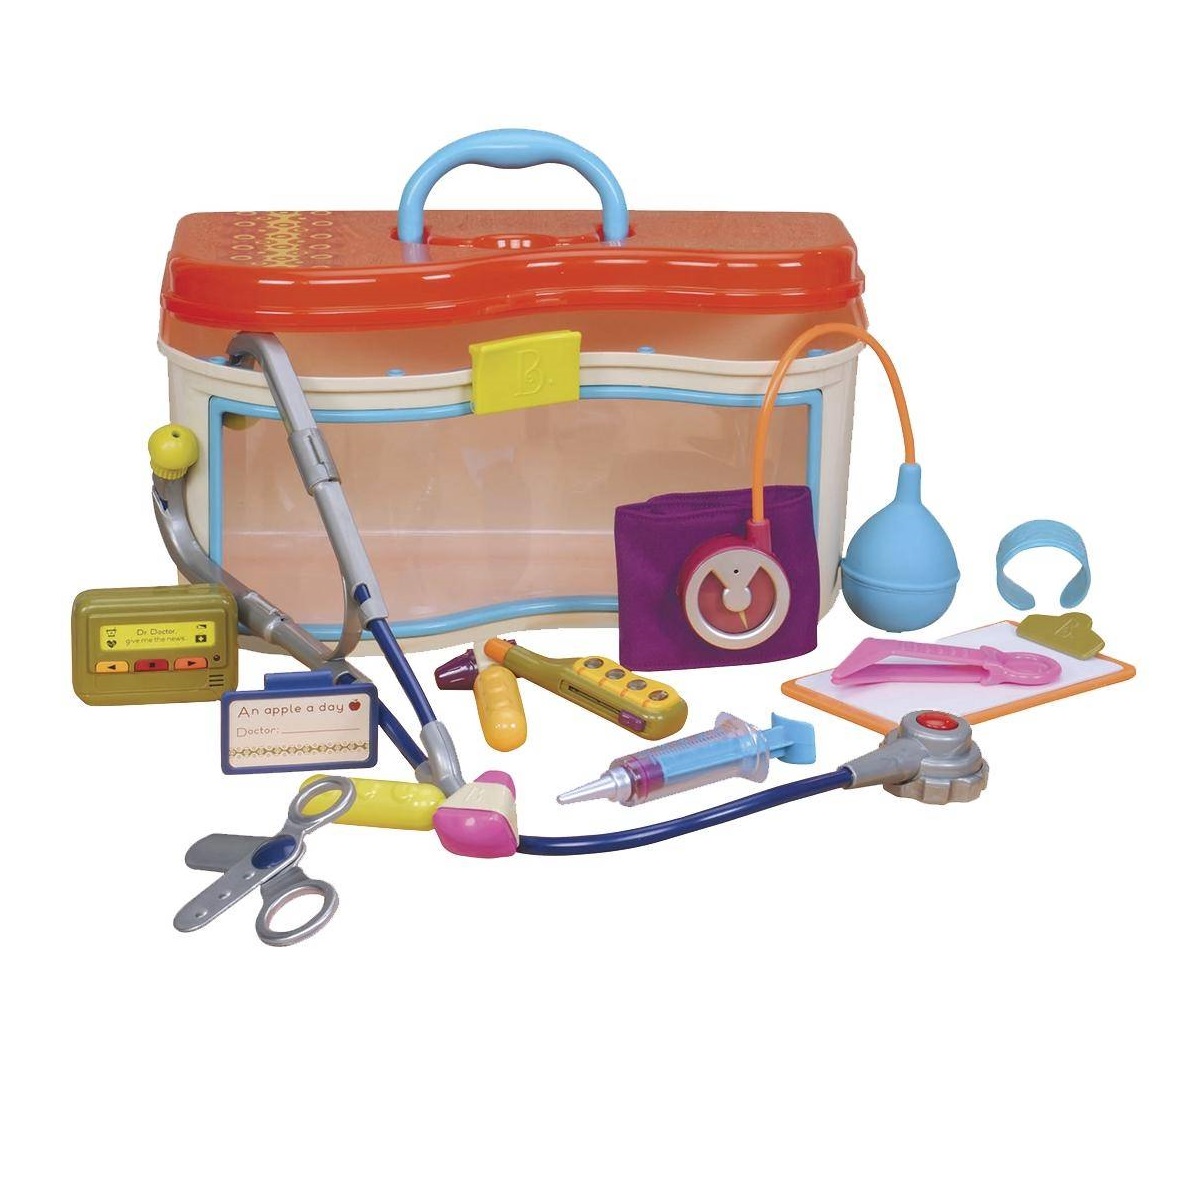 Игровой набор медицинский B.Toys с оранжевой крышкой - купить онлайн в инте...